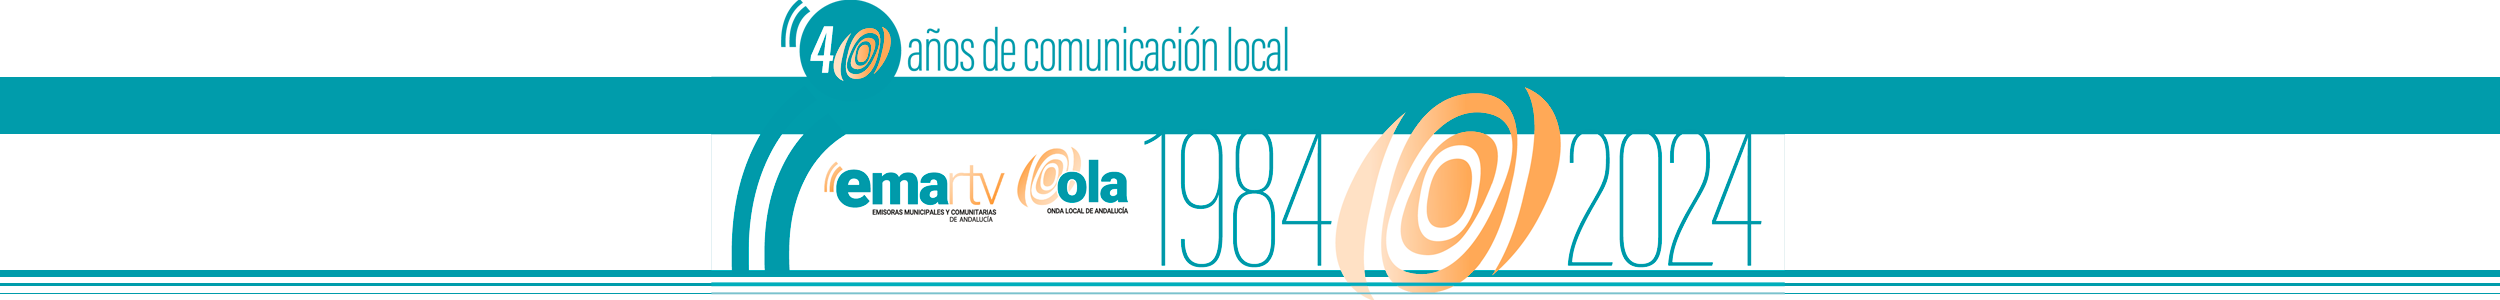 cabecera logo 40 ANIVERSARIO EMA RTV alargada